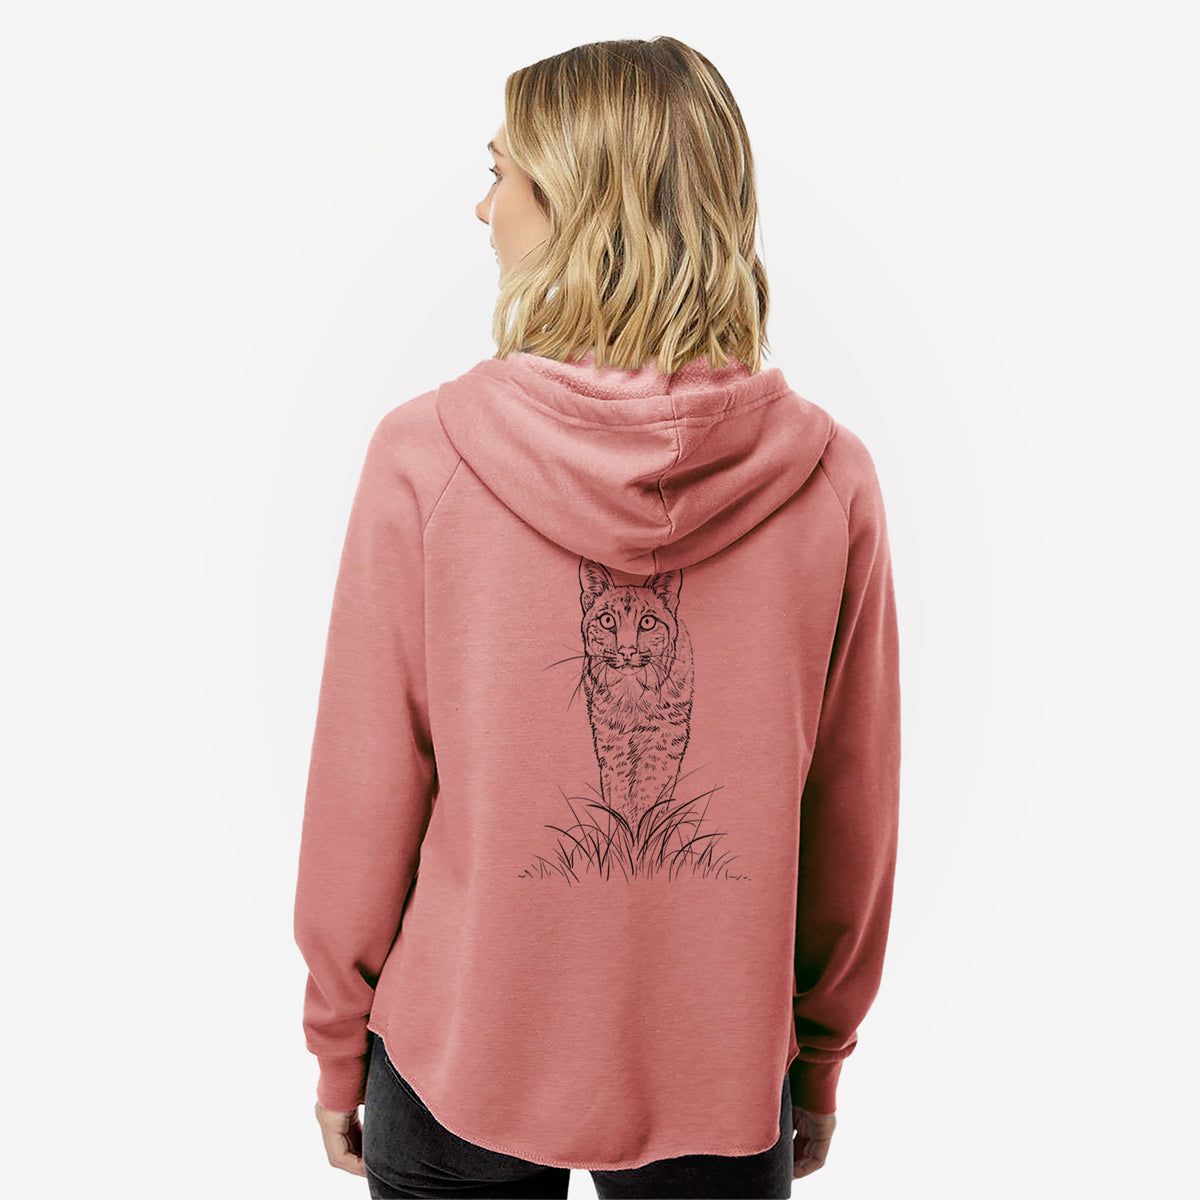 Bobcat - Lynx rufus - Women&#39;s Cali Wave Zip-Up Sweatshirt